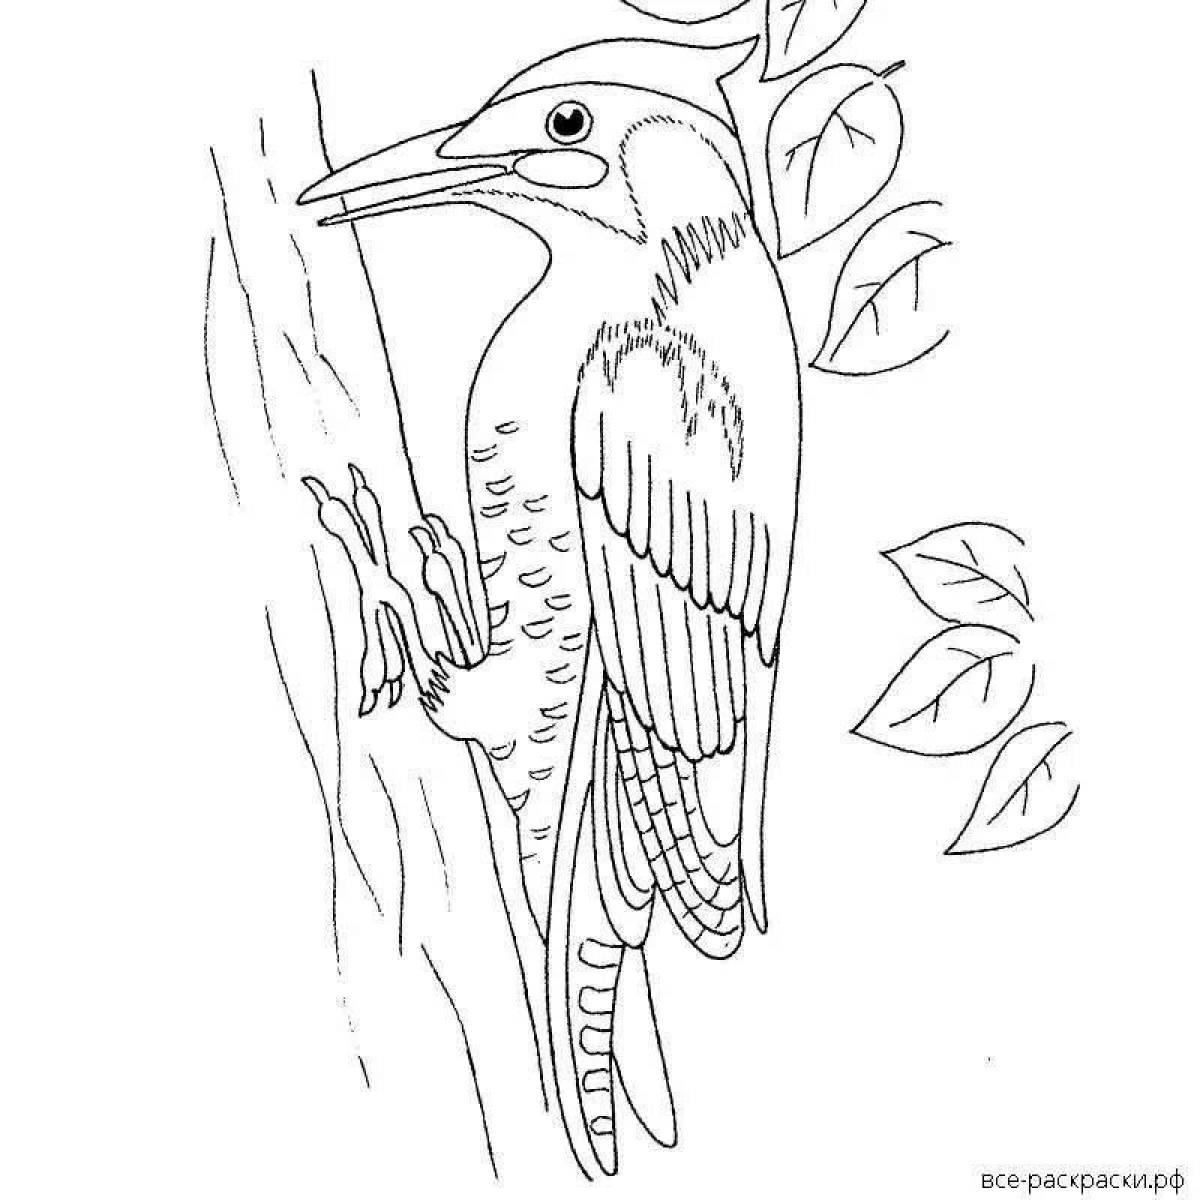 Woodpecker on a tree #4